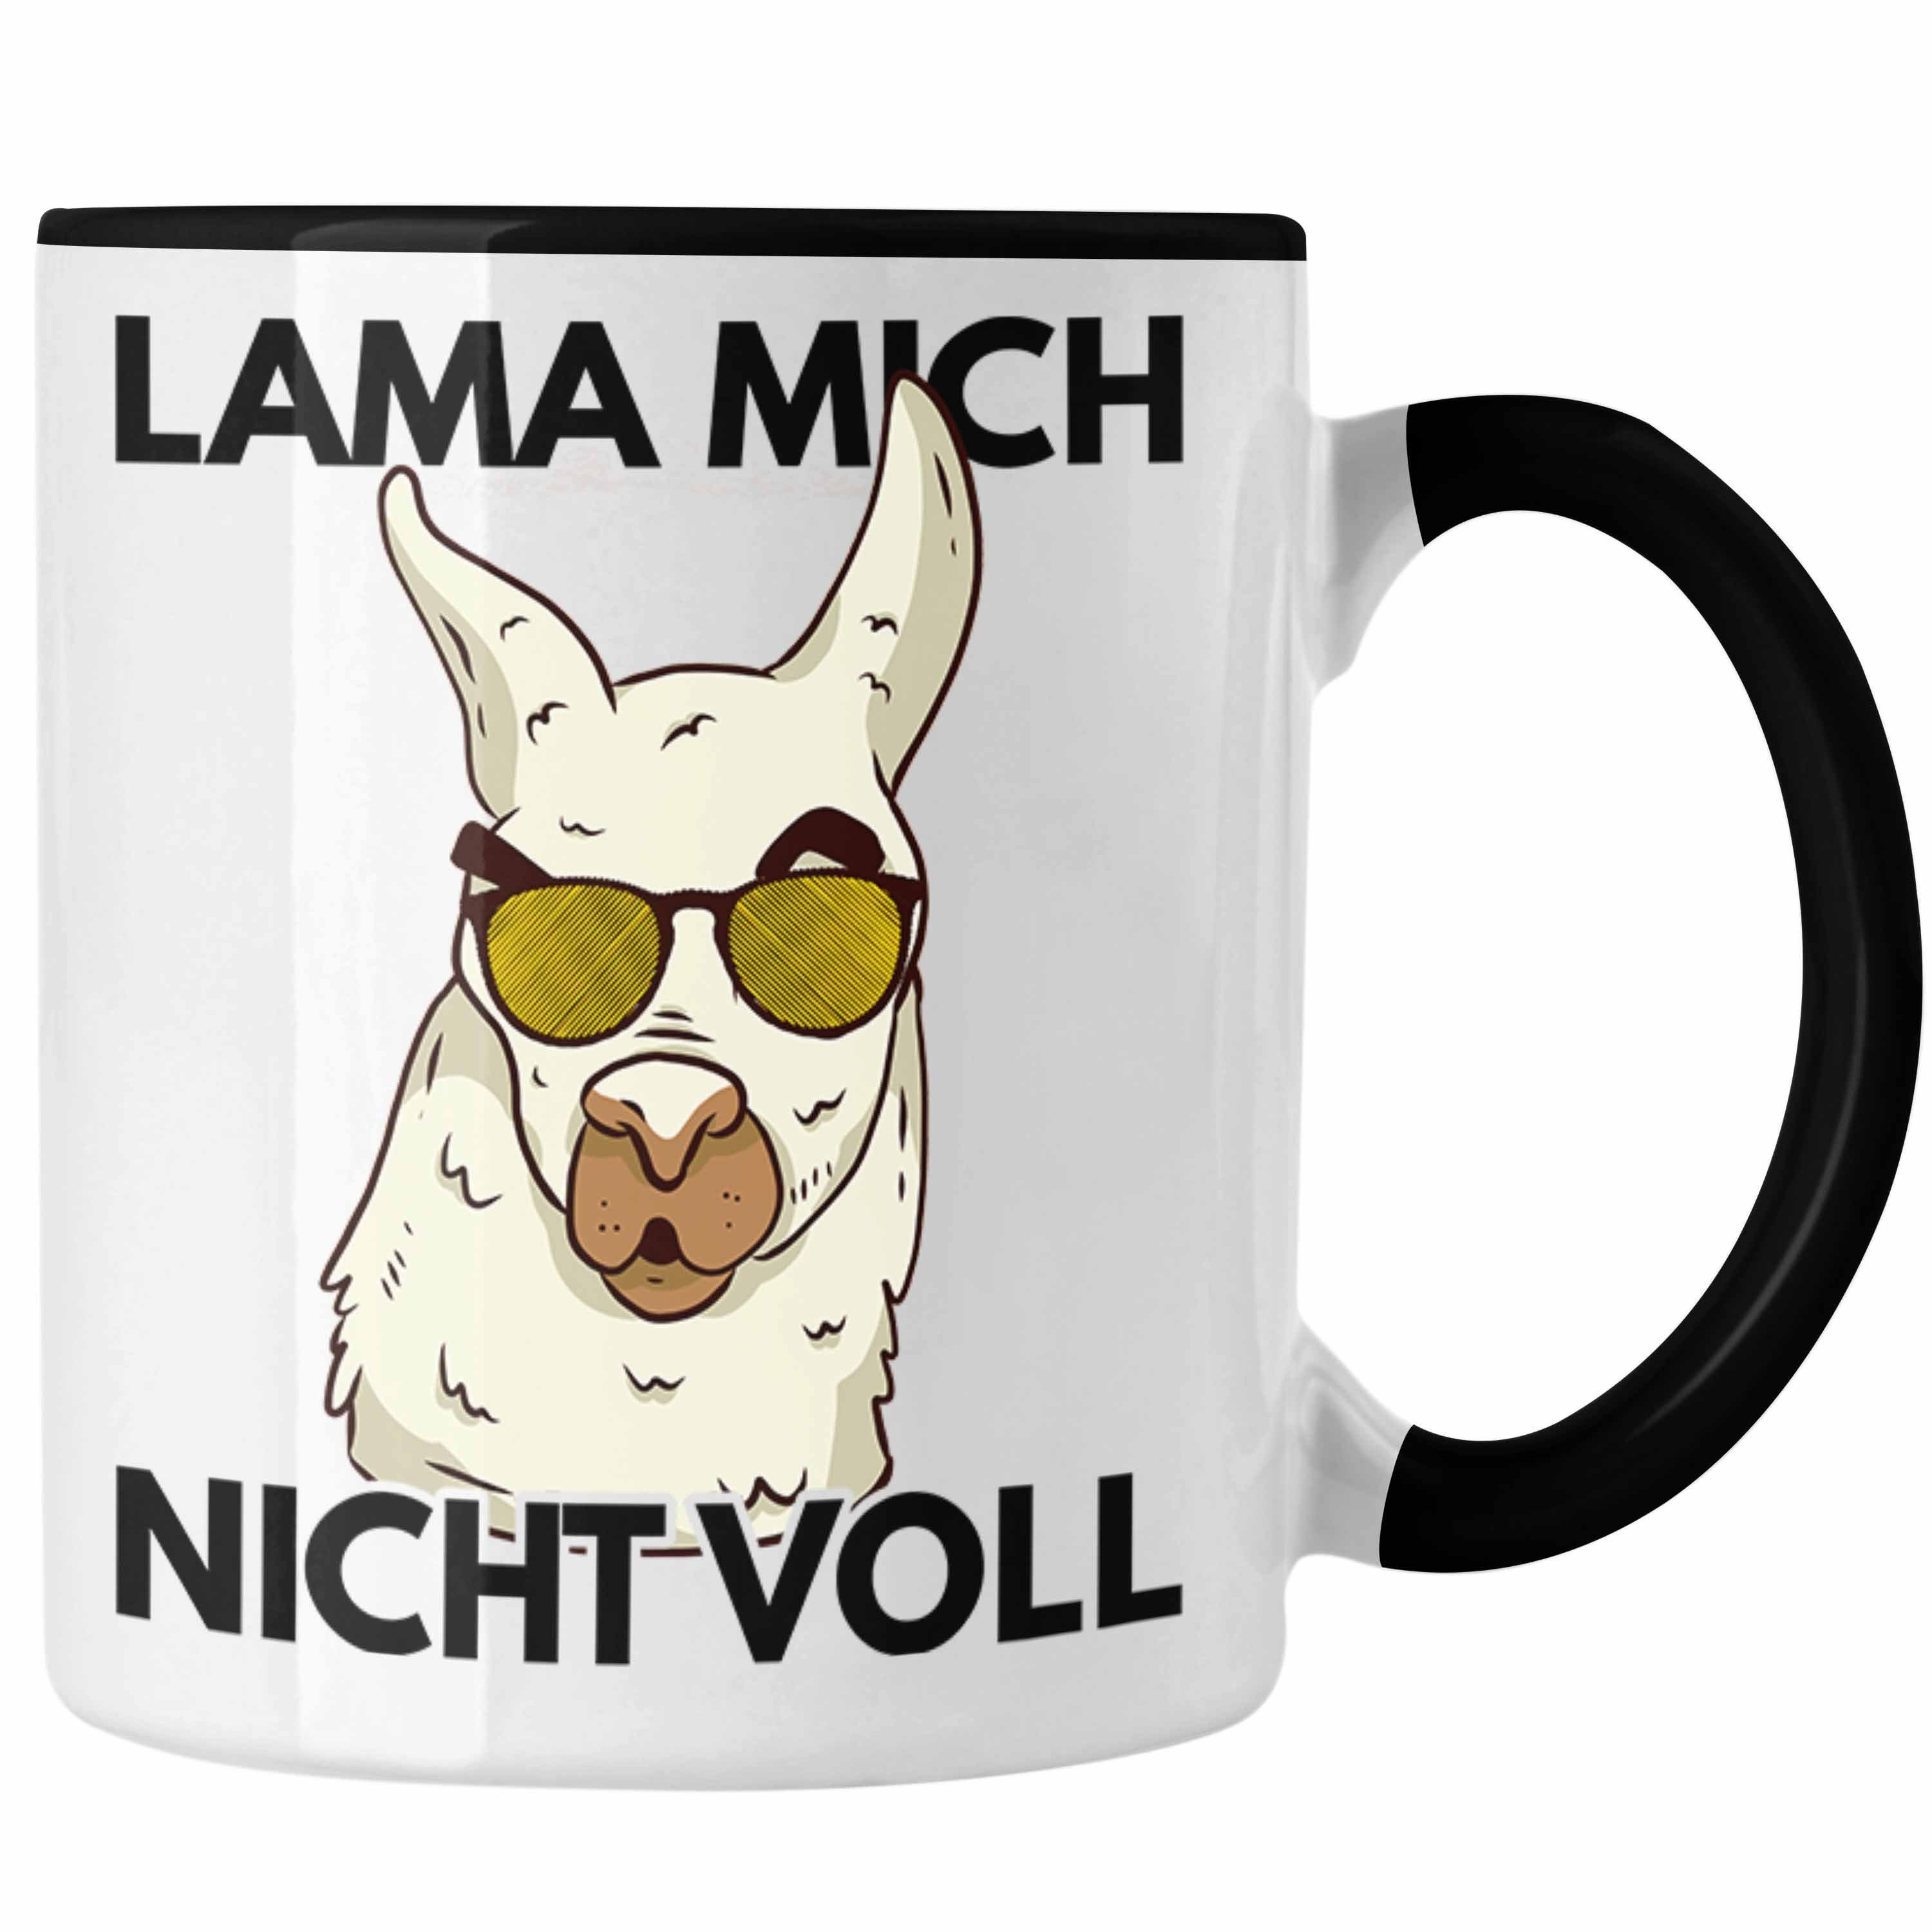 Mich Lama-Liebhaber - Trendation Nicht Alpaka Trendation Tasse Geschenkidee Frauen Geschenk Voll Llama Schwarz Tasse